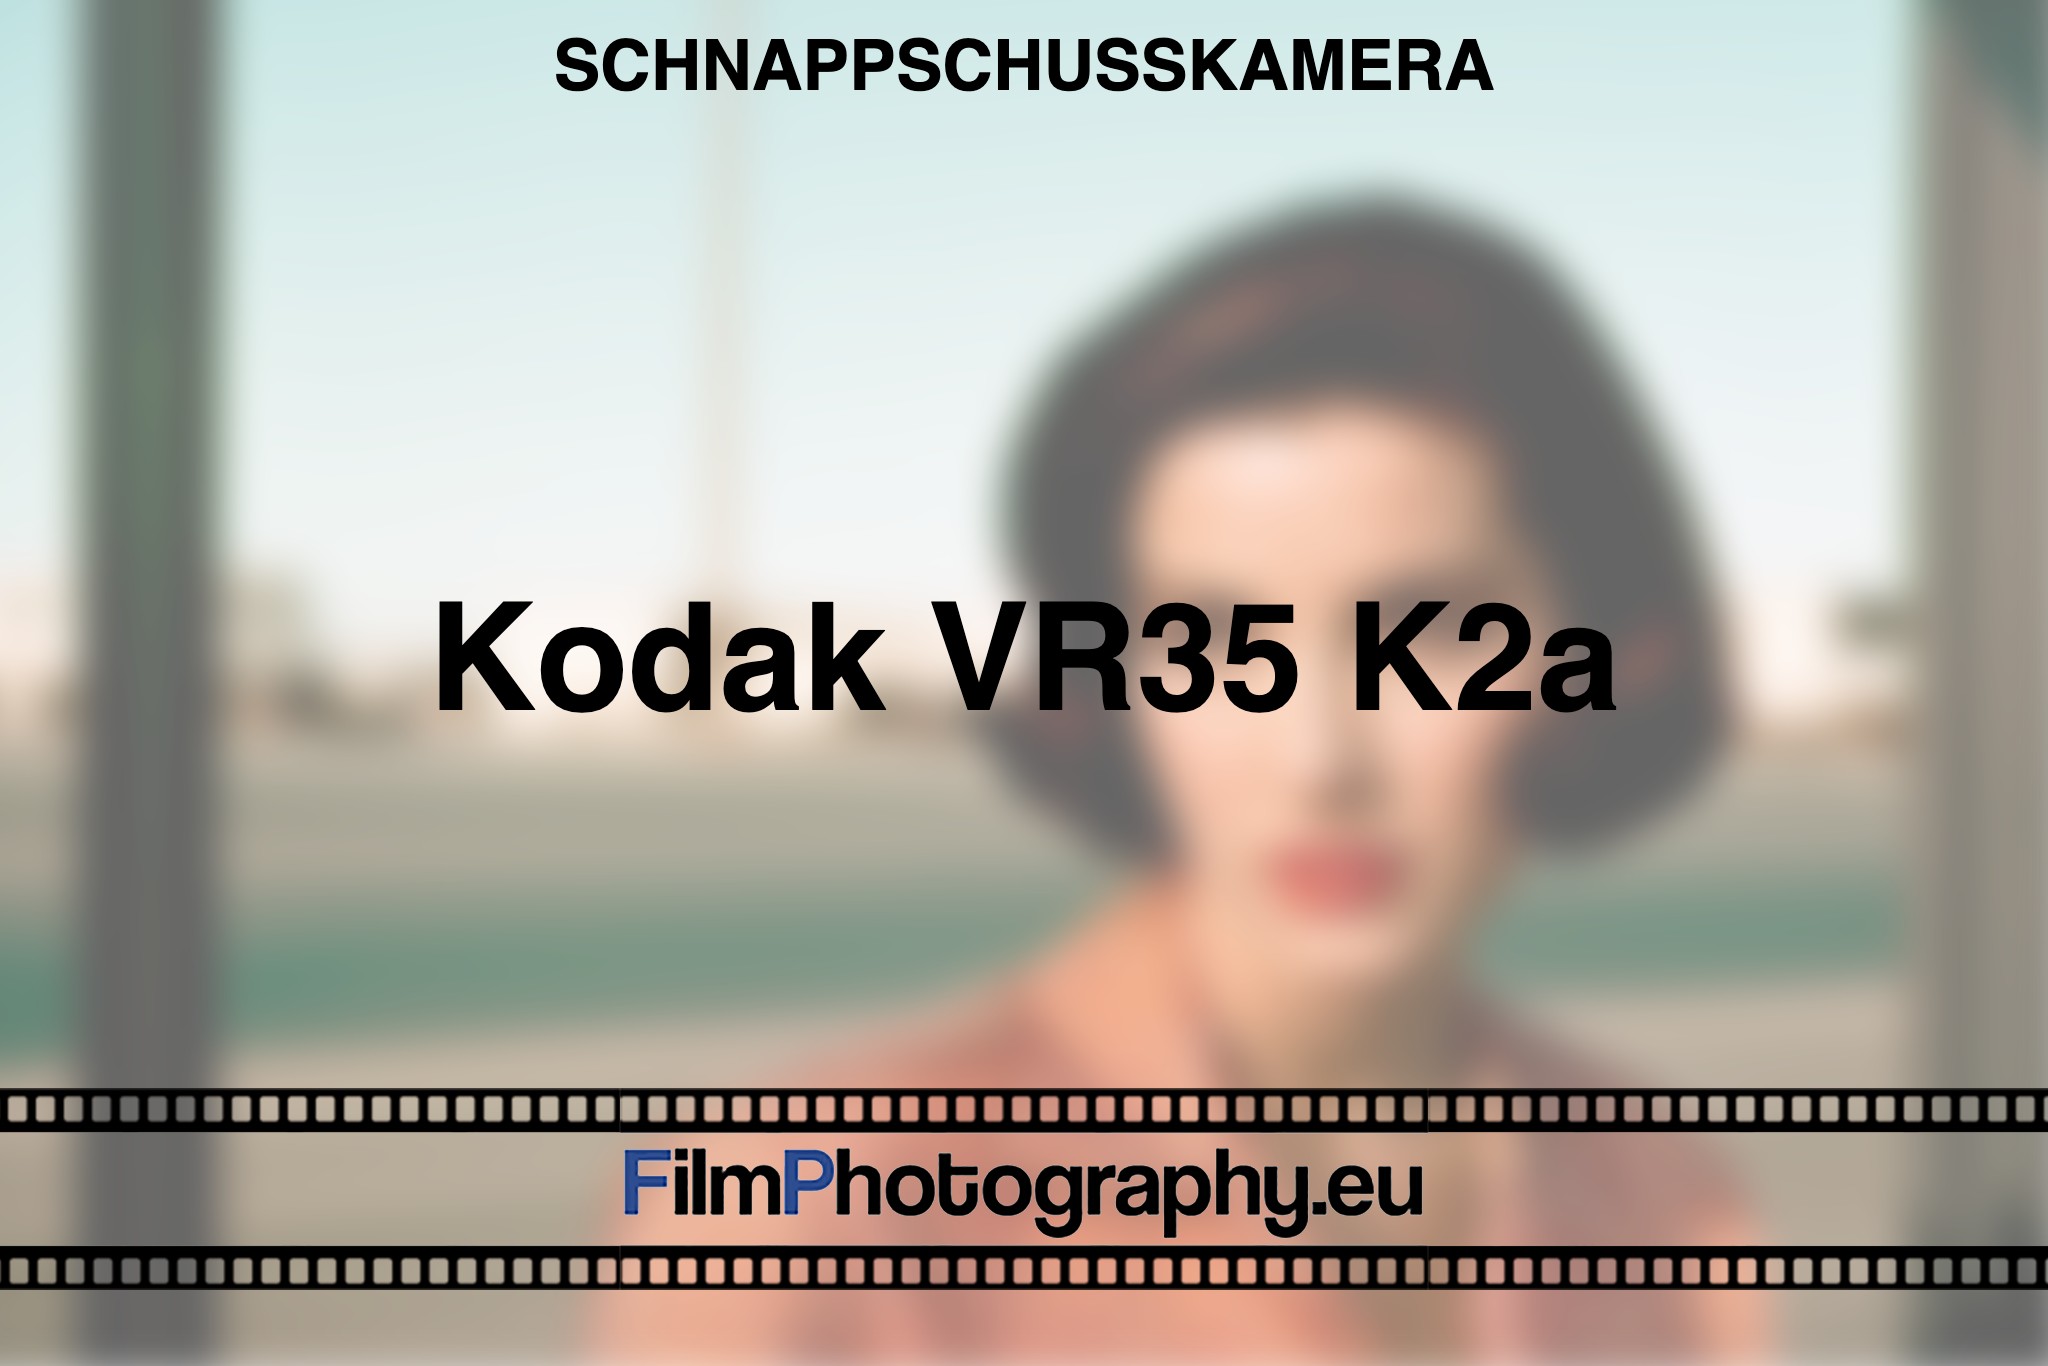 kodak-vr35-k2a-schnappschusskamera-bnv